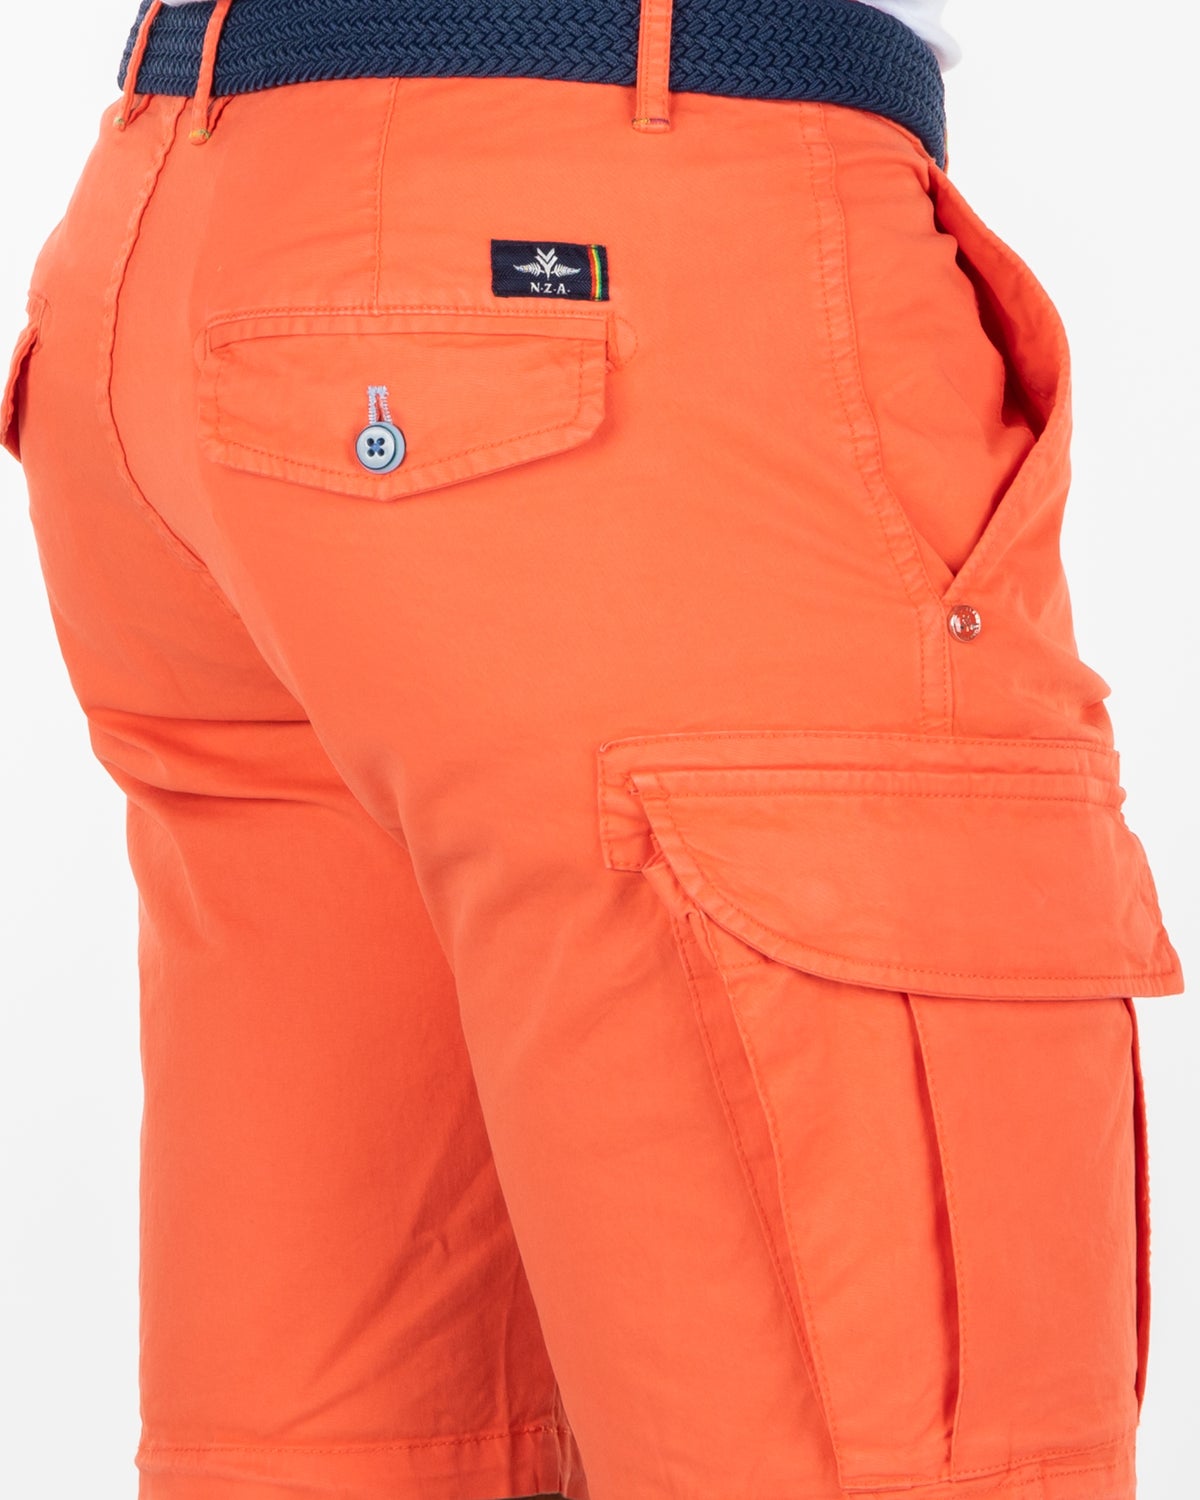 Cotton stretch cargo shorts - Burned Orange